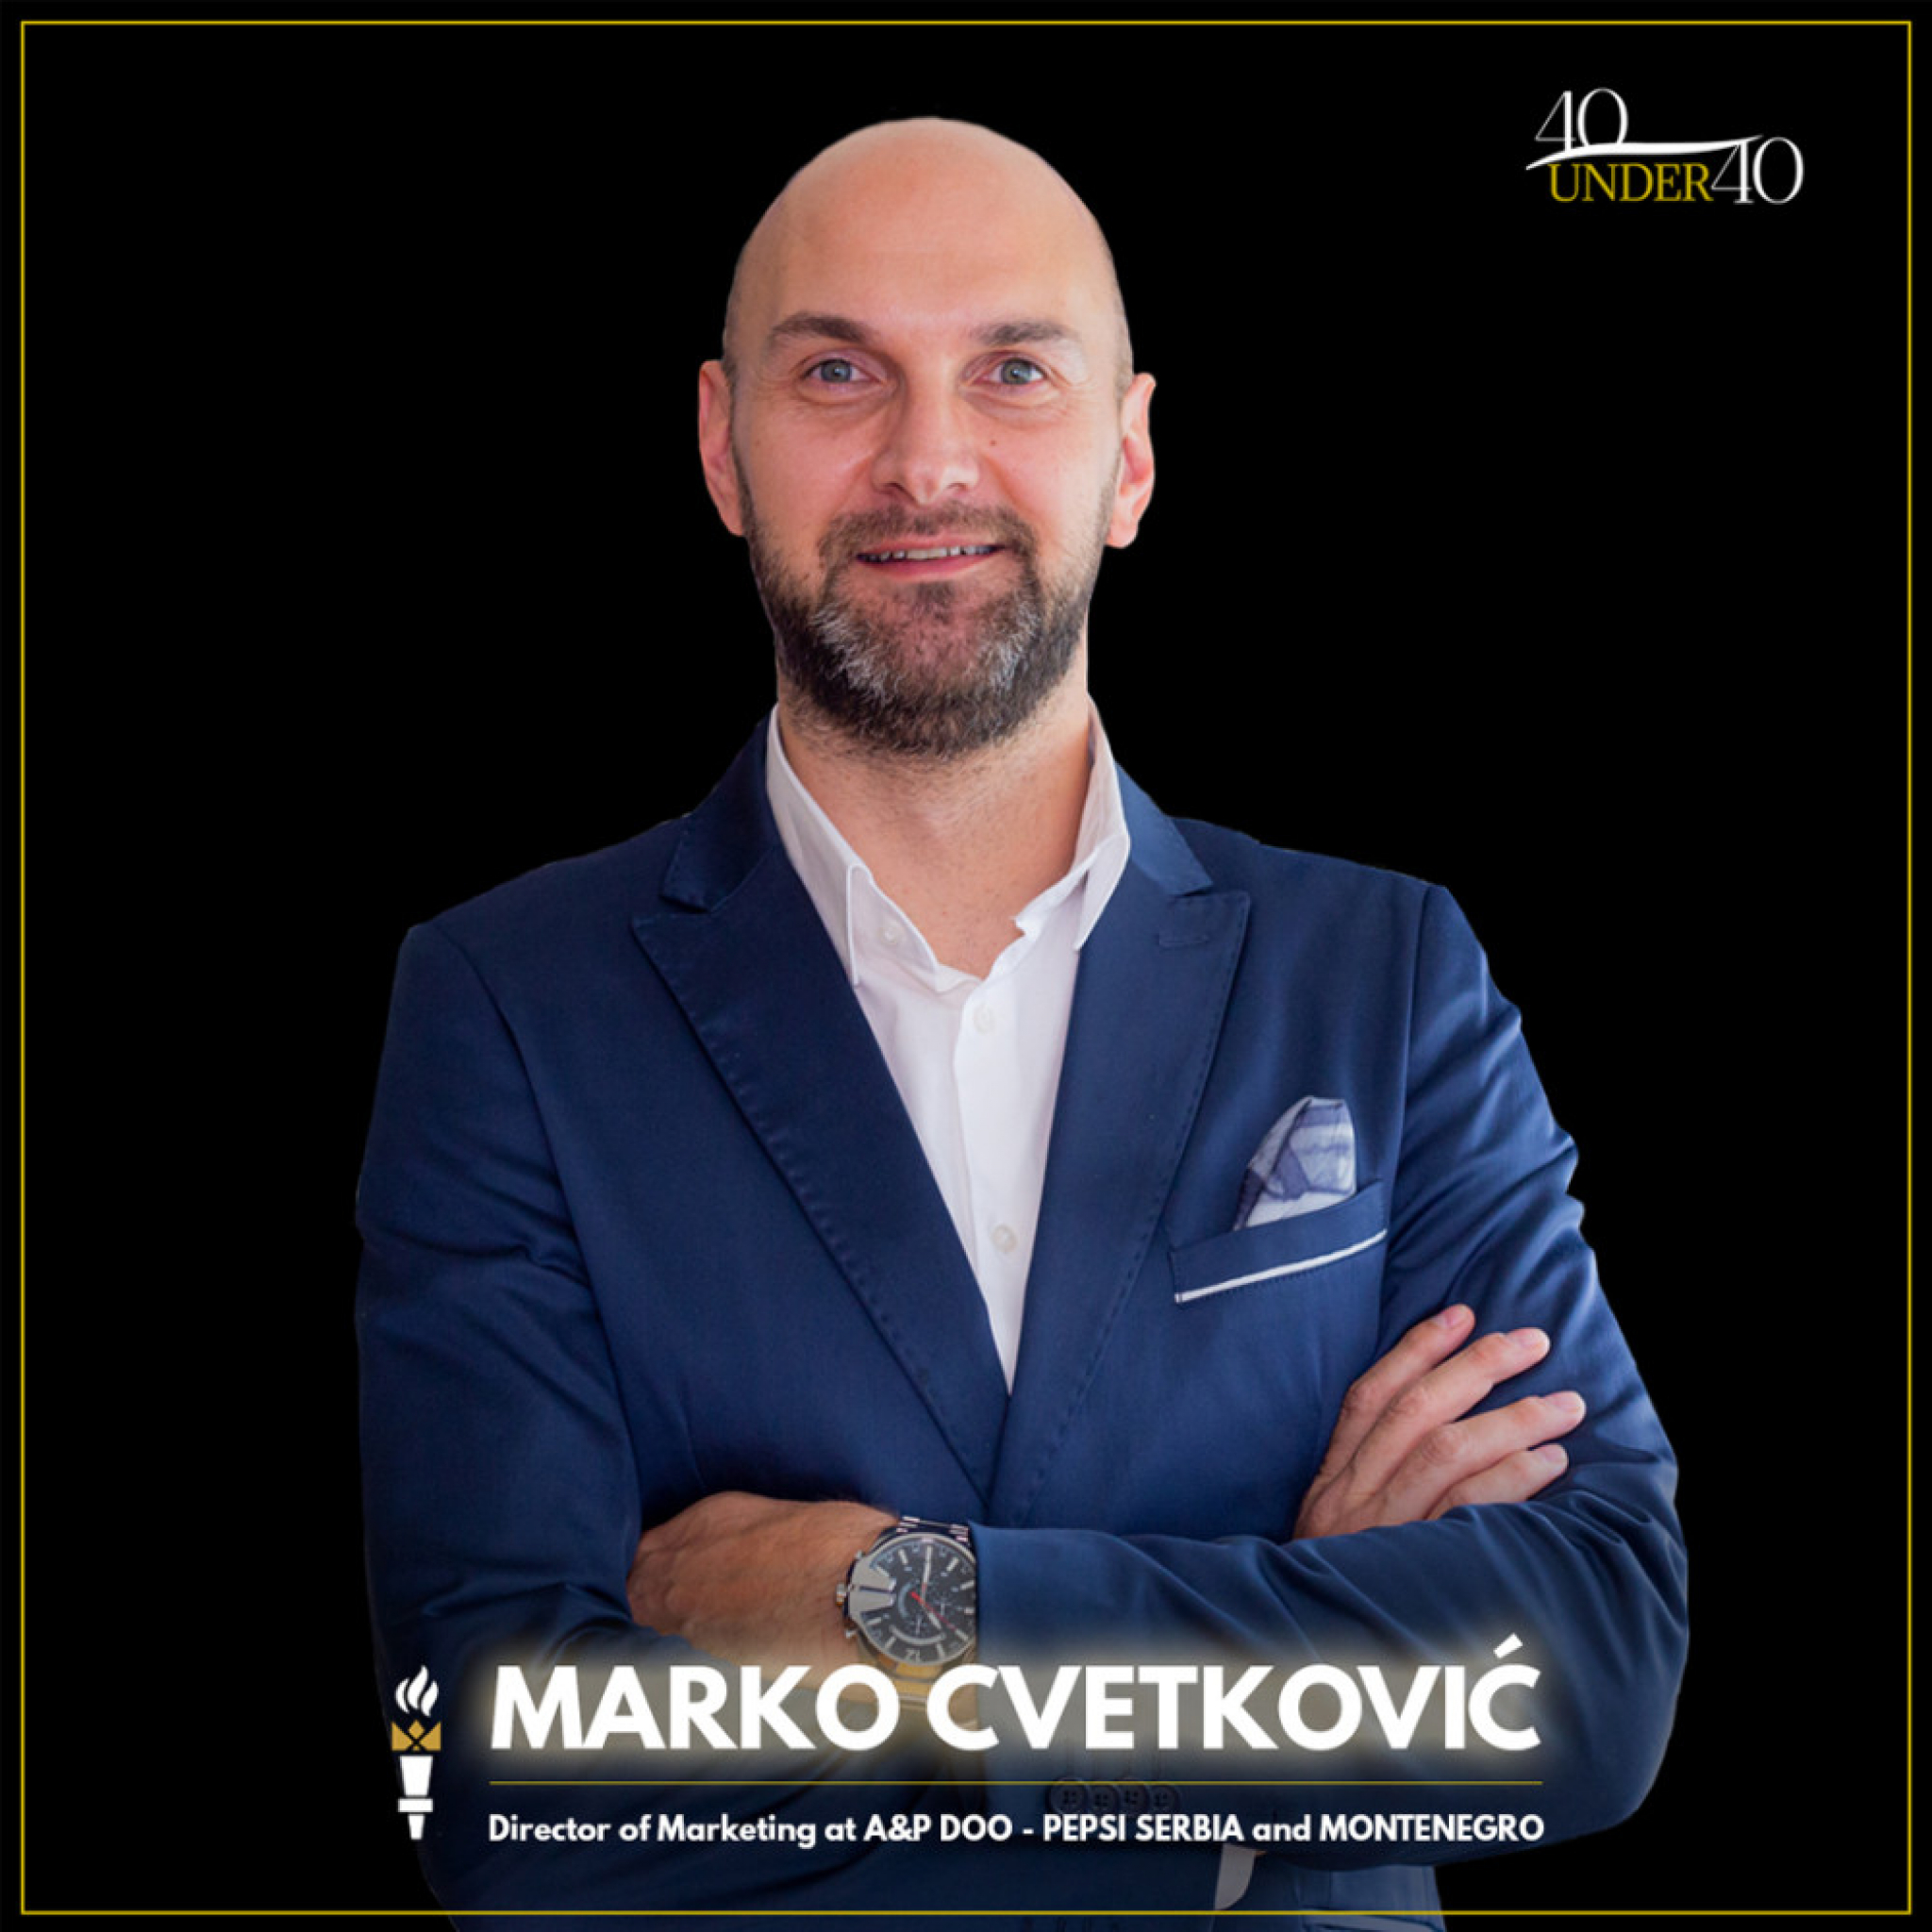 Marko Cvetanović